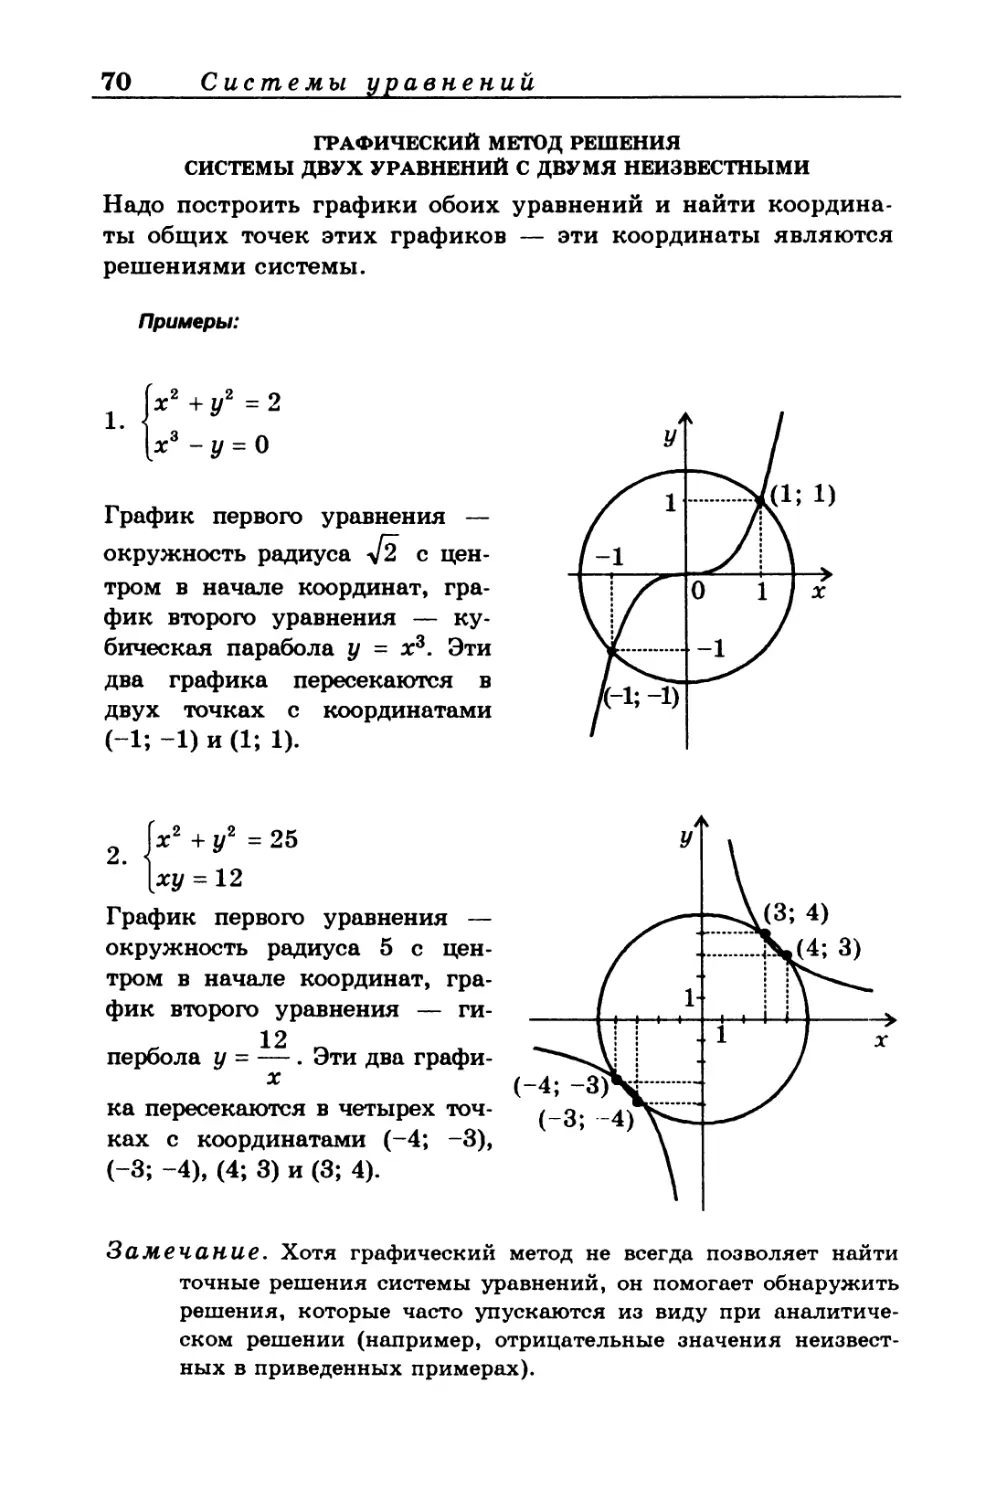 Графический метод решения системы двух уравнений